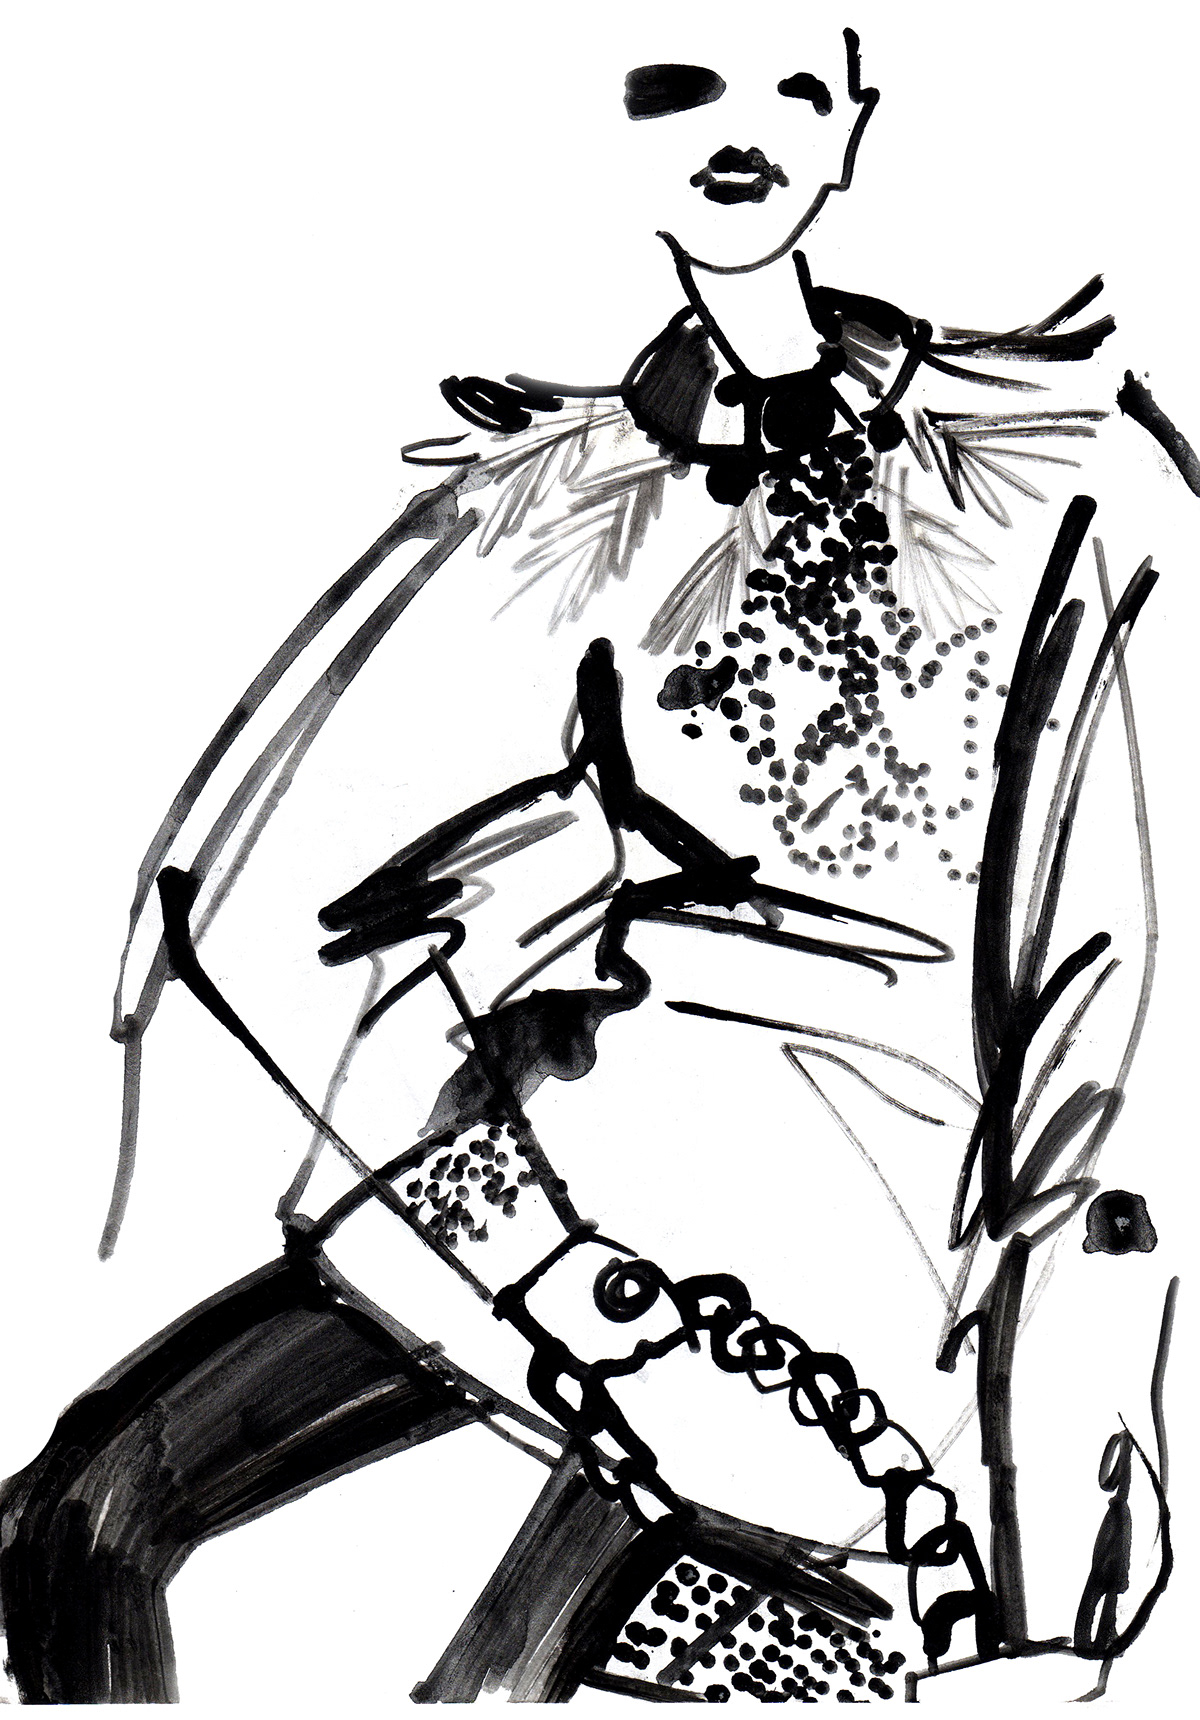 Fsshion illustration  иллюстрация моды  наброски журнальные зарисовки  фломастер  